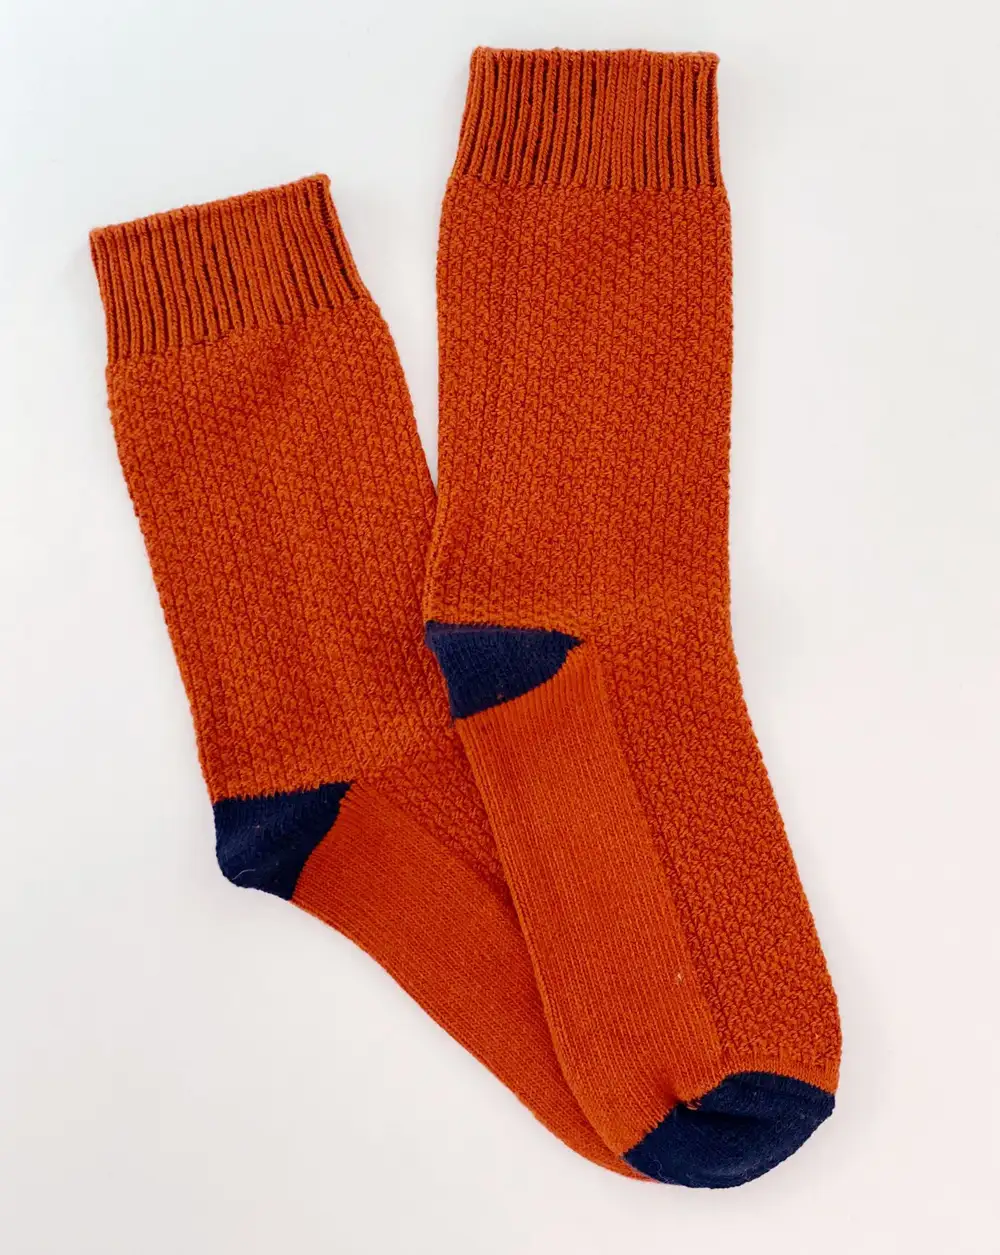 Çorap N442- Bolero Kabartma Desenli Kiremit Kışlık Çorap